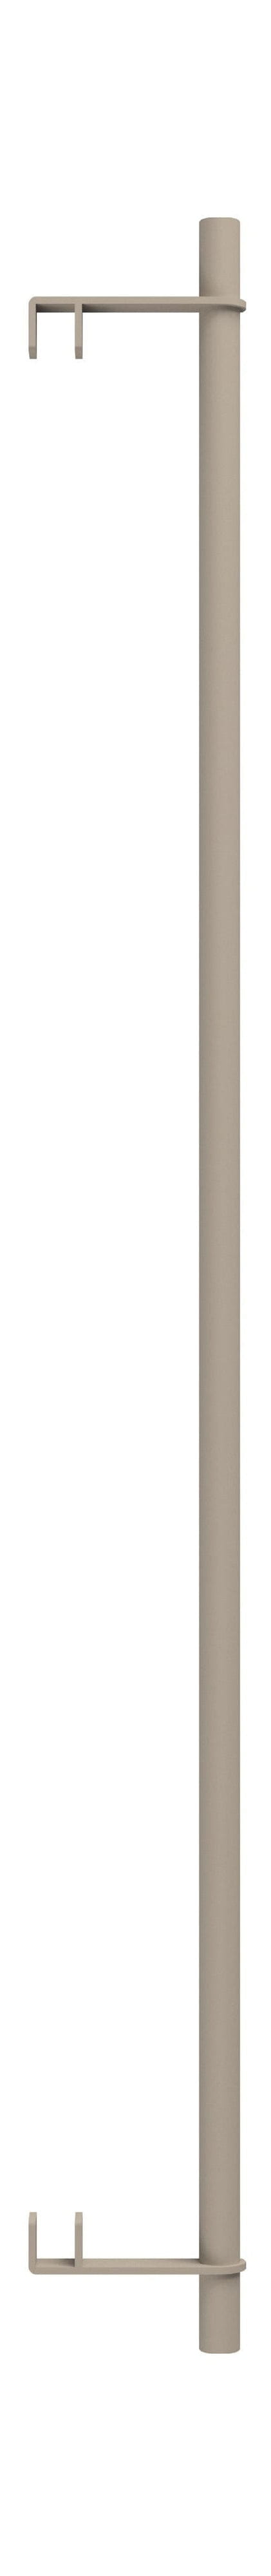 Sistema di scaffalature MOEBE/Scaffali per scaffalature a parete Bar 85 cm, grigio caldo